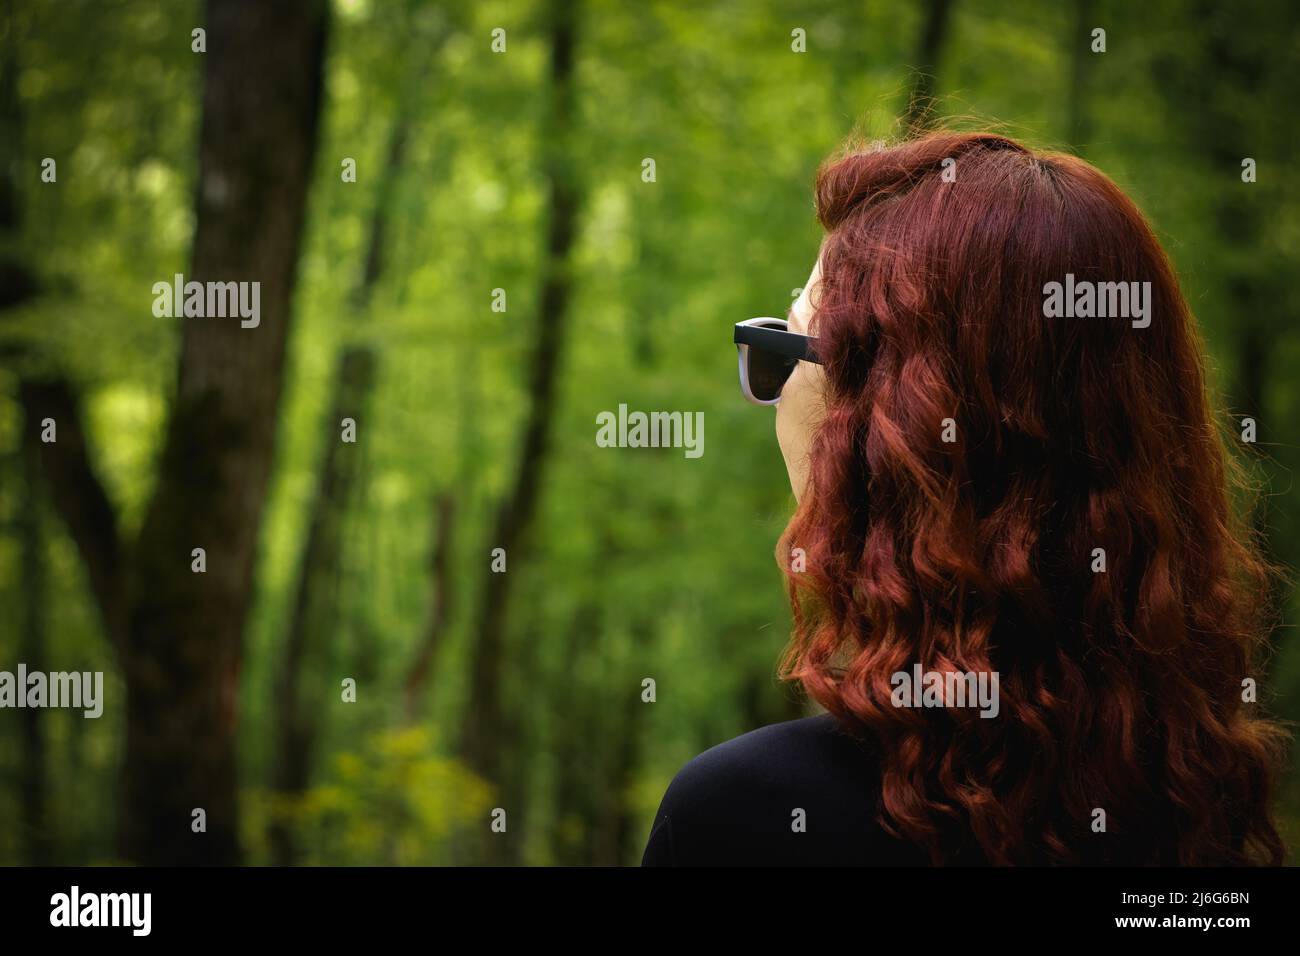 Junge Frau denkt und beobachtet magische Bäume in Wäldern Landschaft. Stockfoto